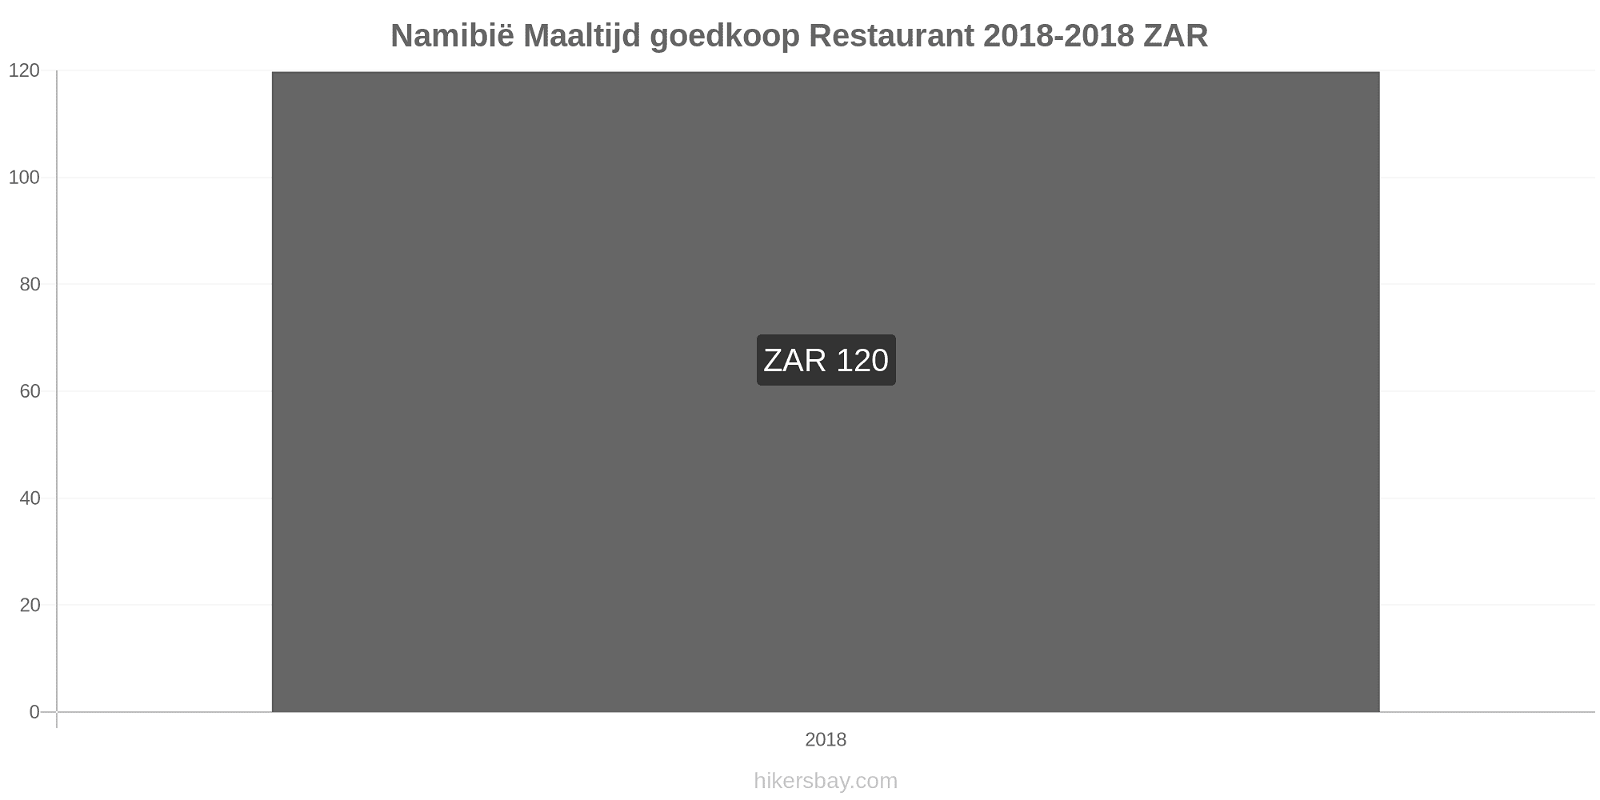 Namibië prijswijzigingen Maaltijd in een goedkoop restaurant hikersbay.com